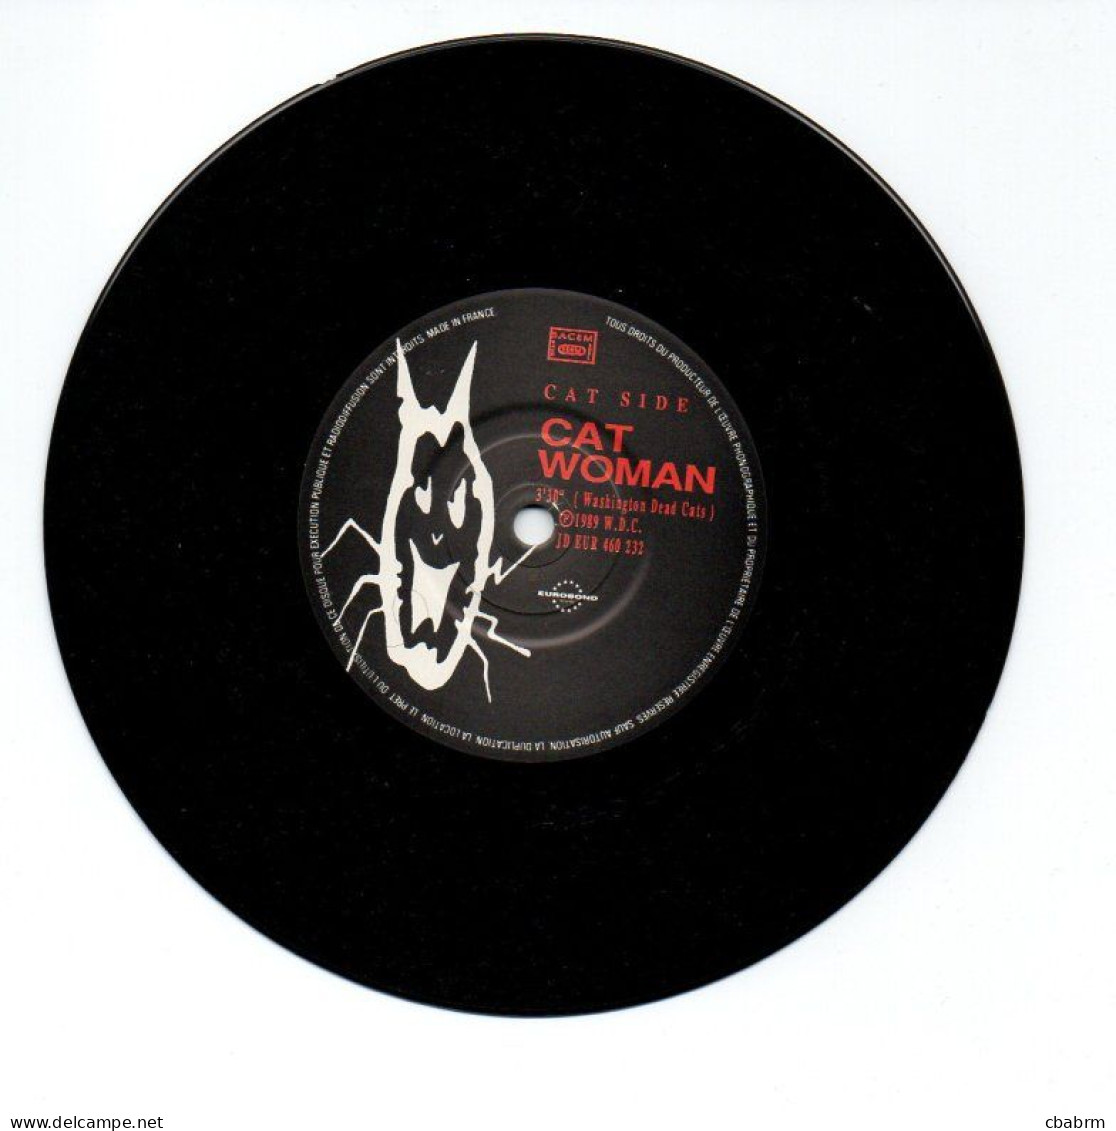 SP 45 TOURS WASHINGTON DEAD CATS BATMAN 1989 FRANCE EUROBOND JD 460 232 - 7" - Rock